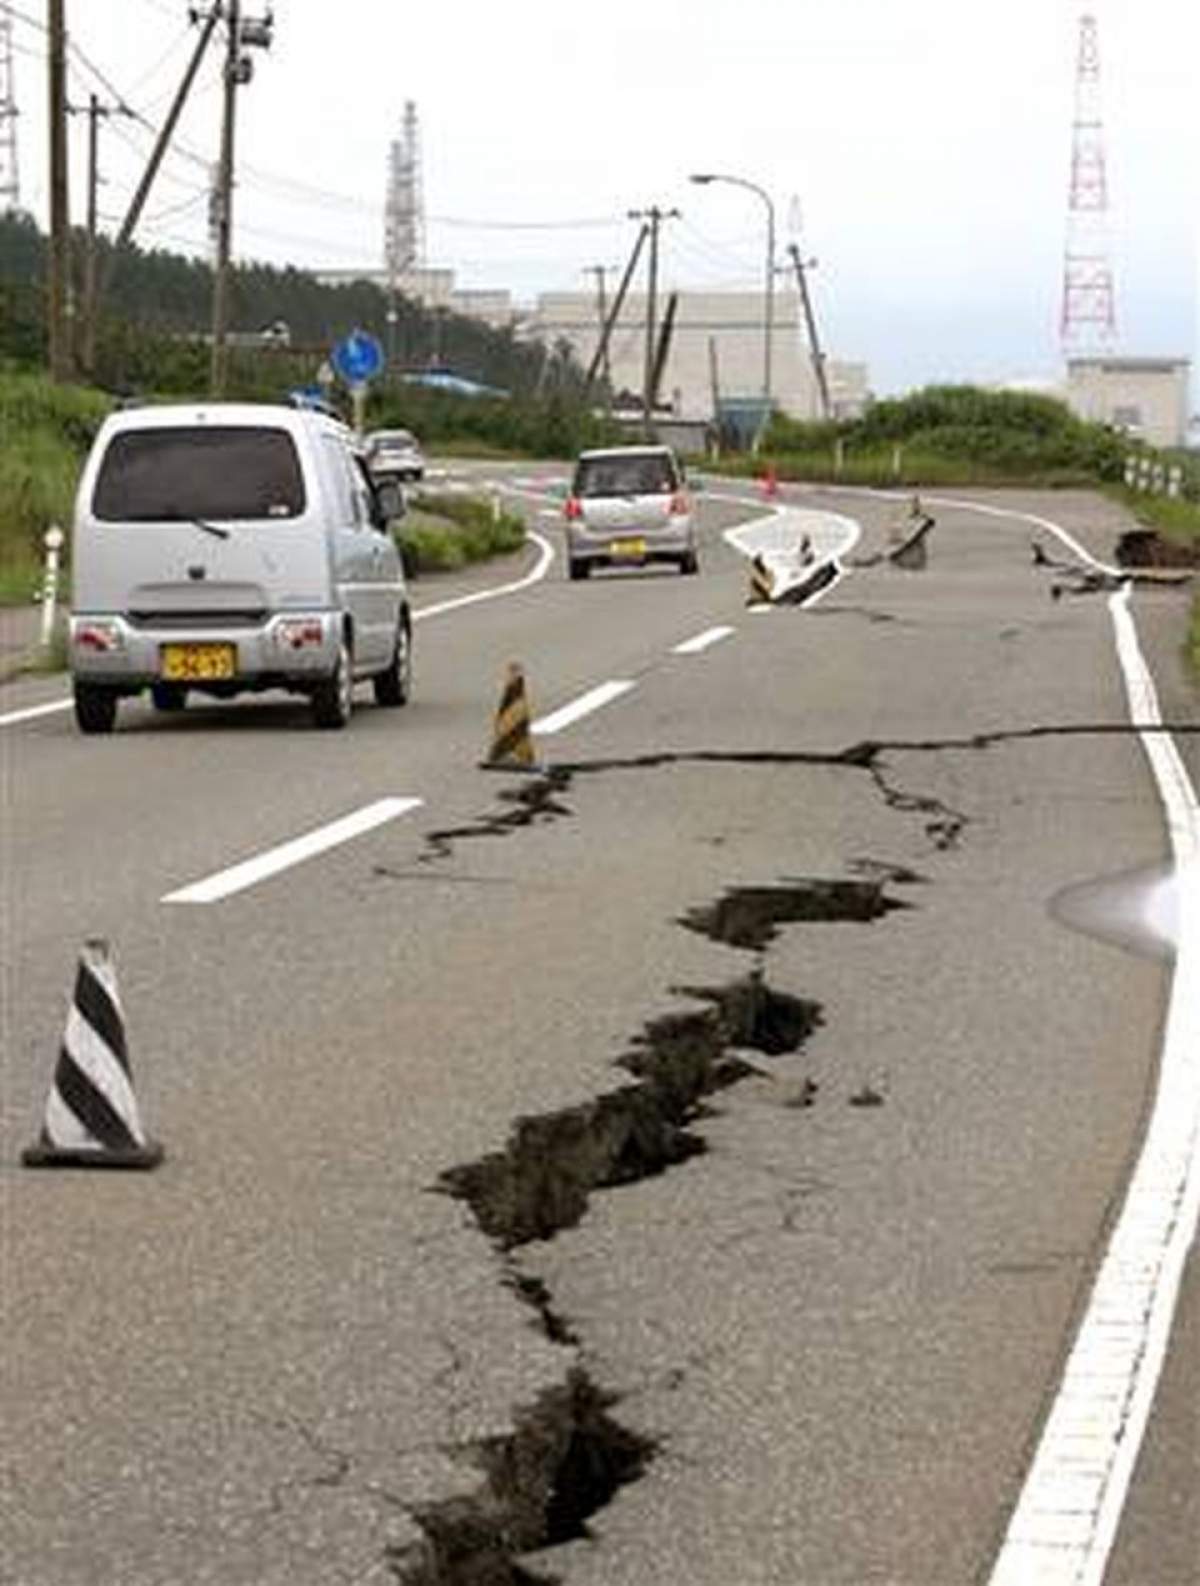 Alte cutremure au avut loc în localitatea Izvoarele! Falia seismică s-a reactivat